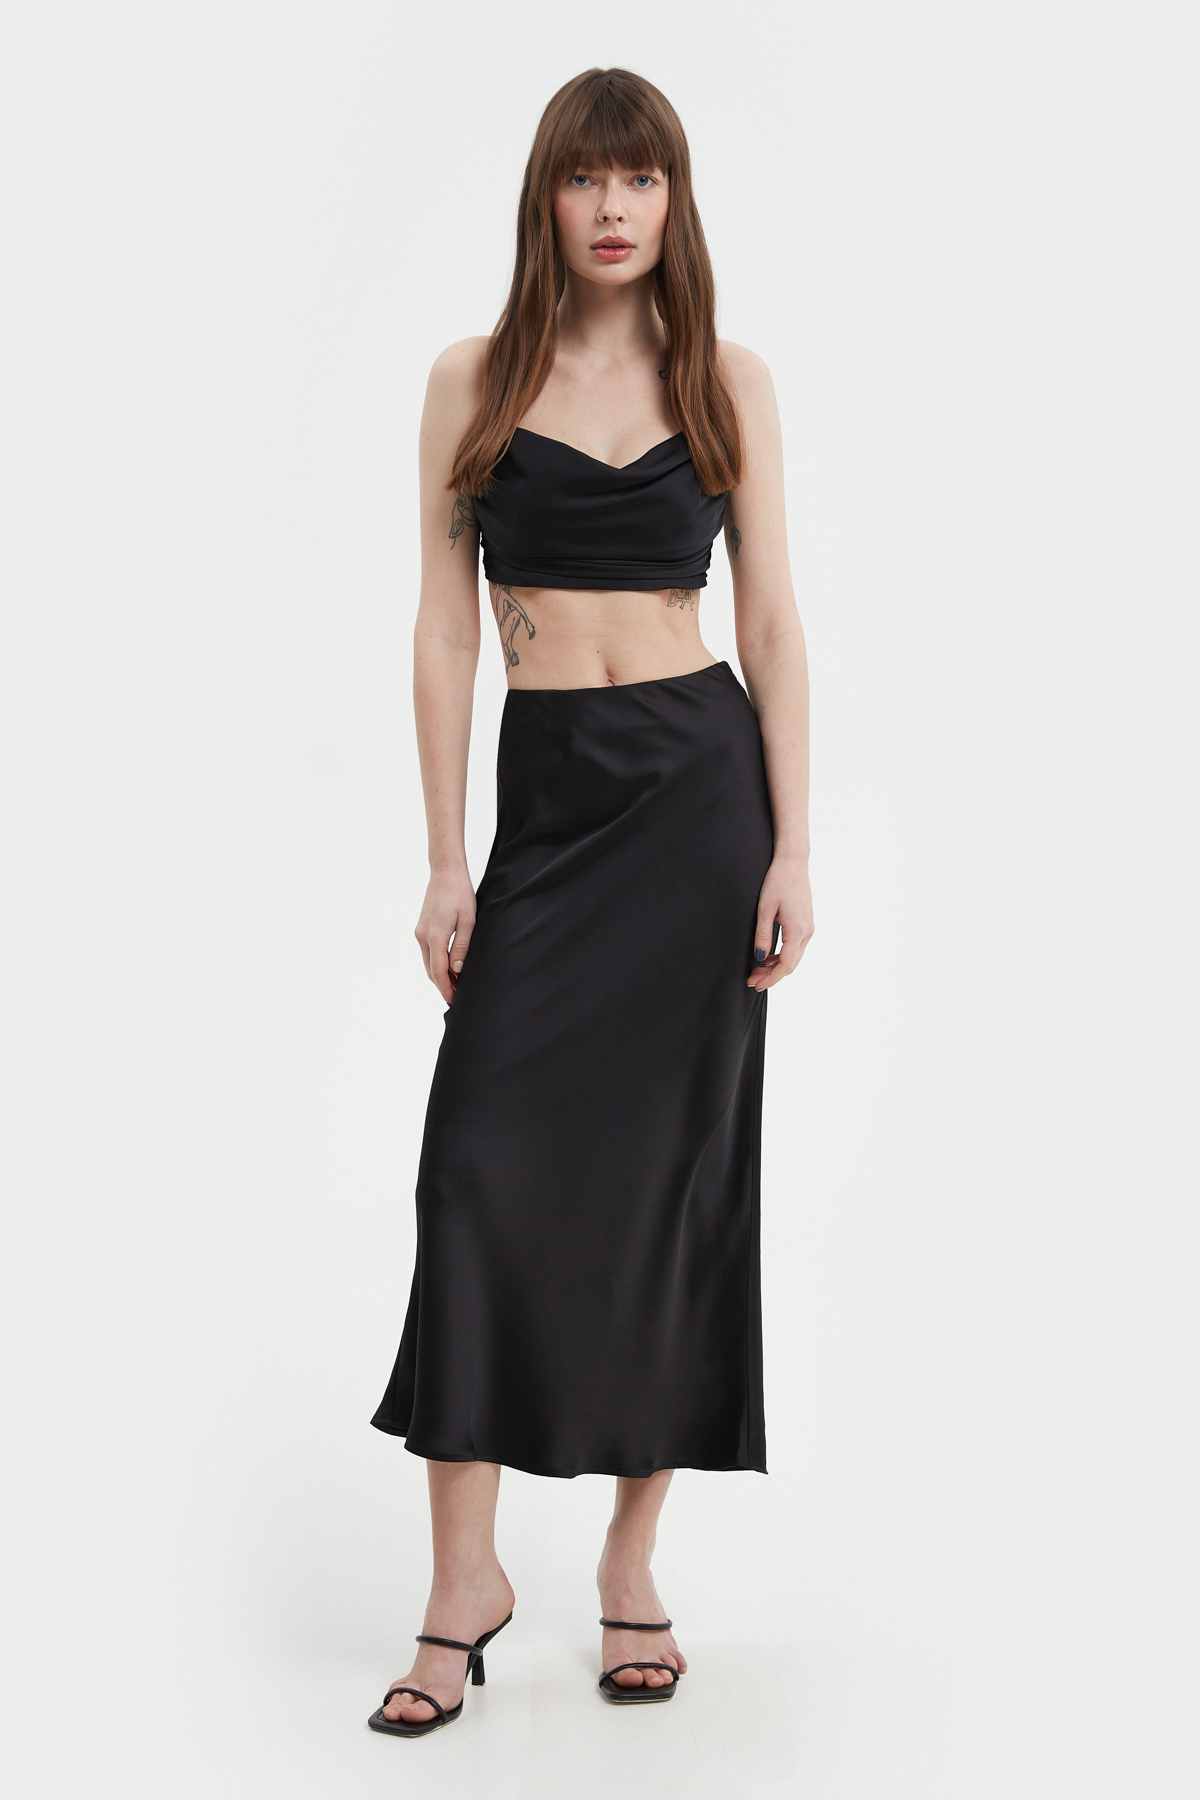 Black satin midi skirt, photo 1